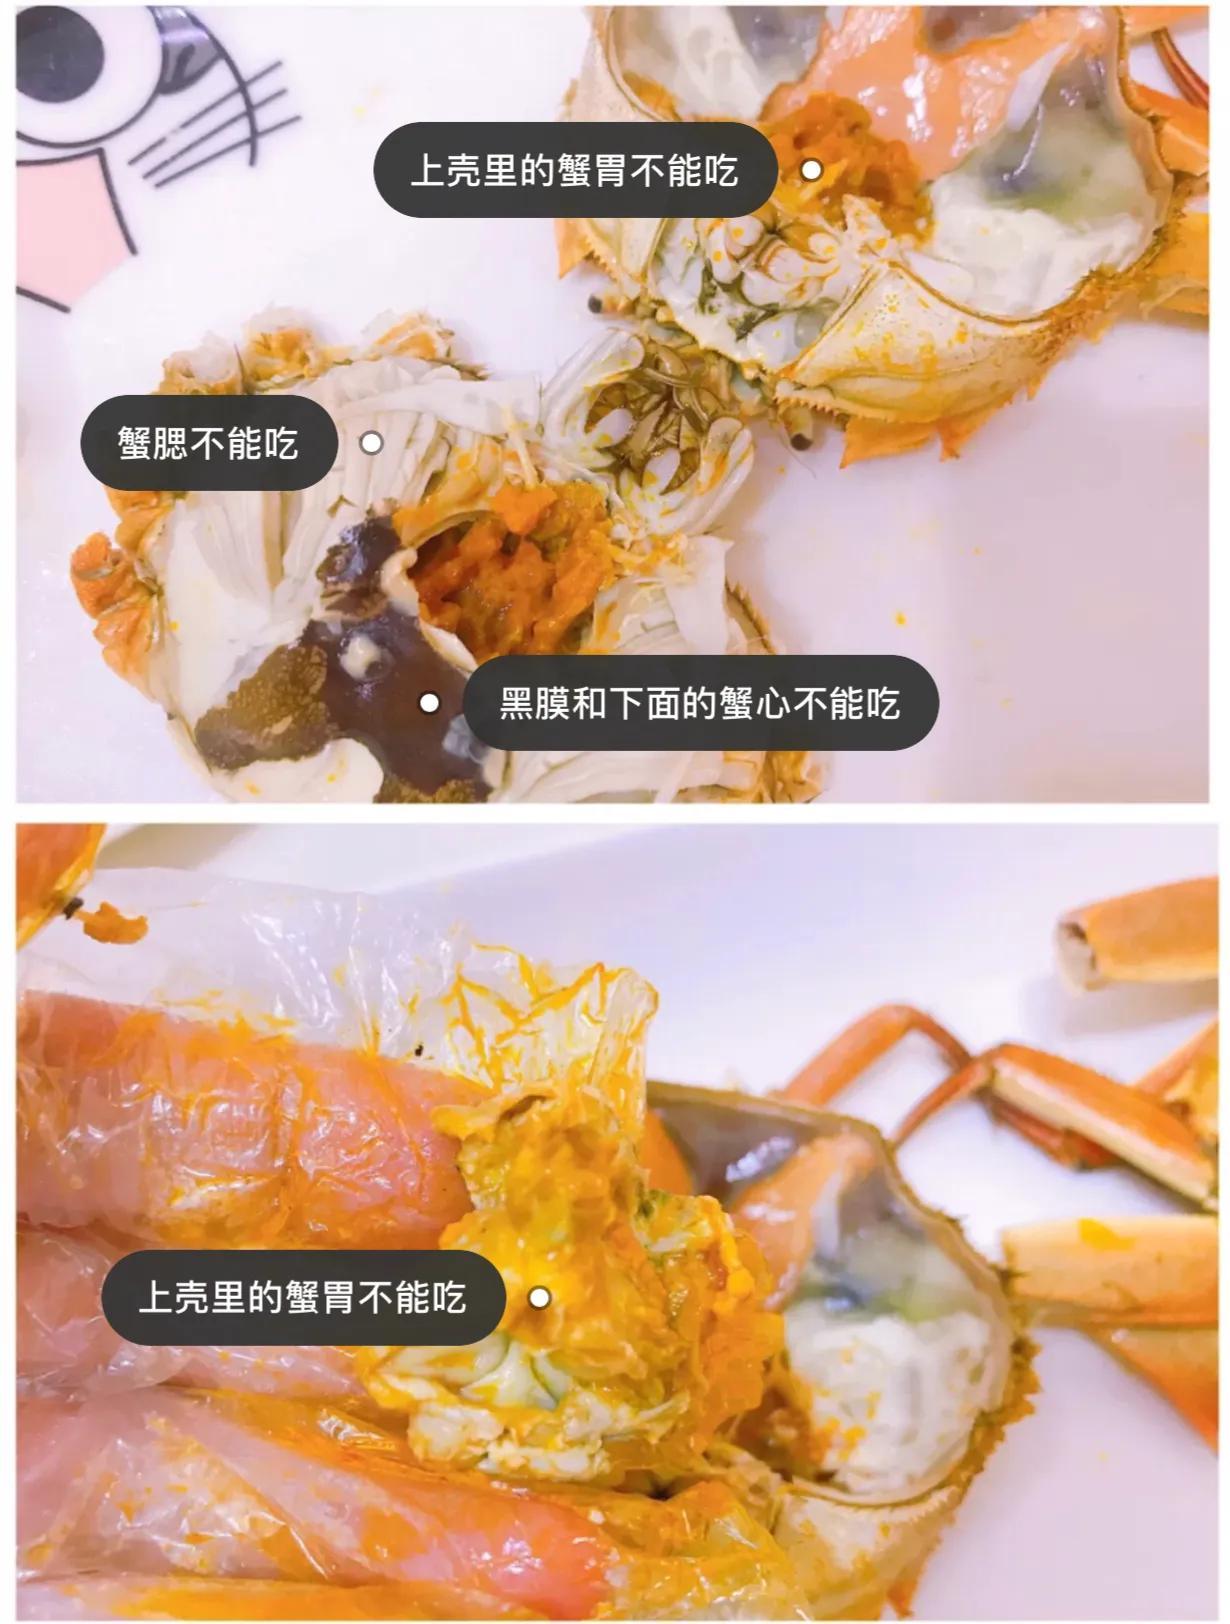 螃蟹哪几个部位不能吃？大厨教你一步步分解，看完视频你就明白了 - 哔哩哔哩